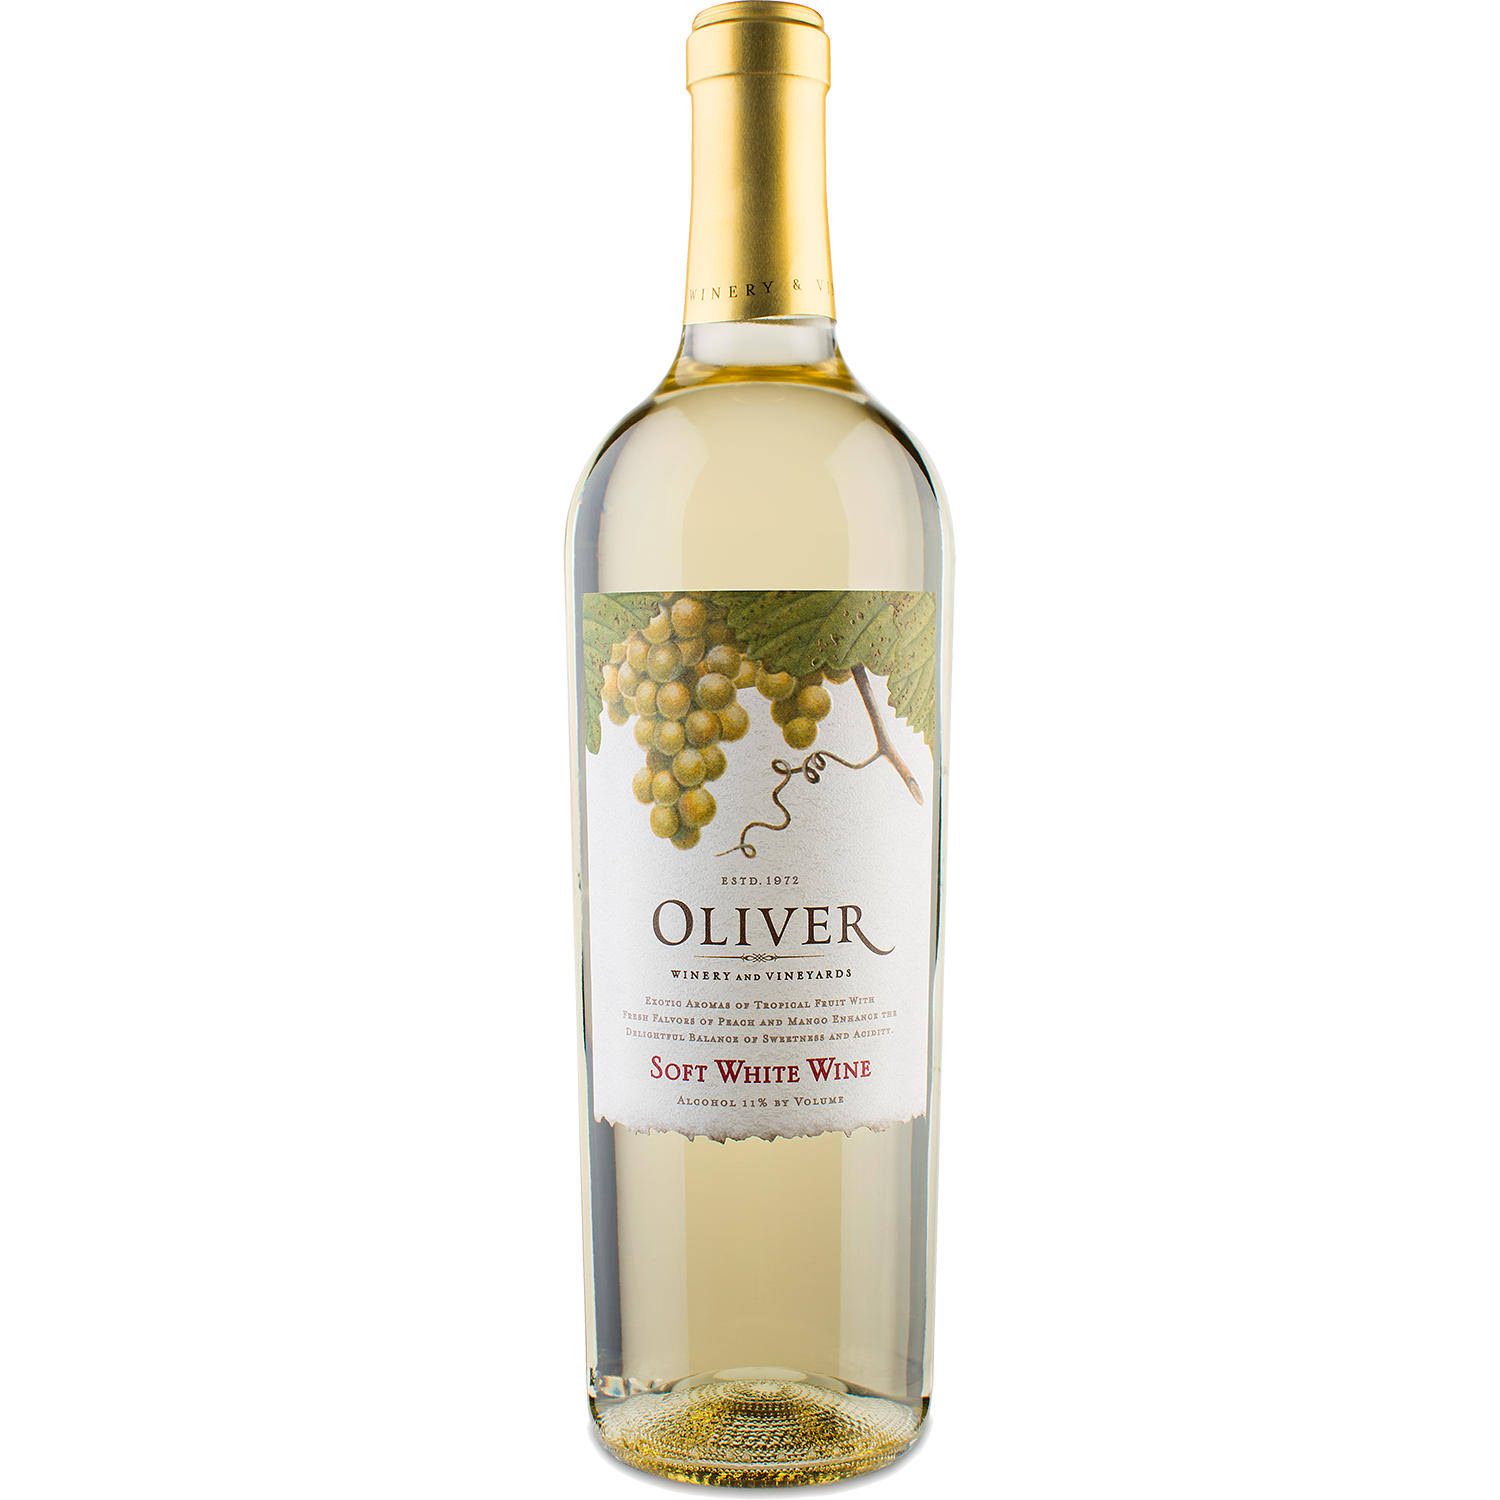 Oliver Soft White Wine